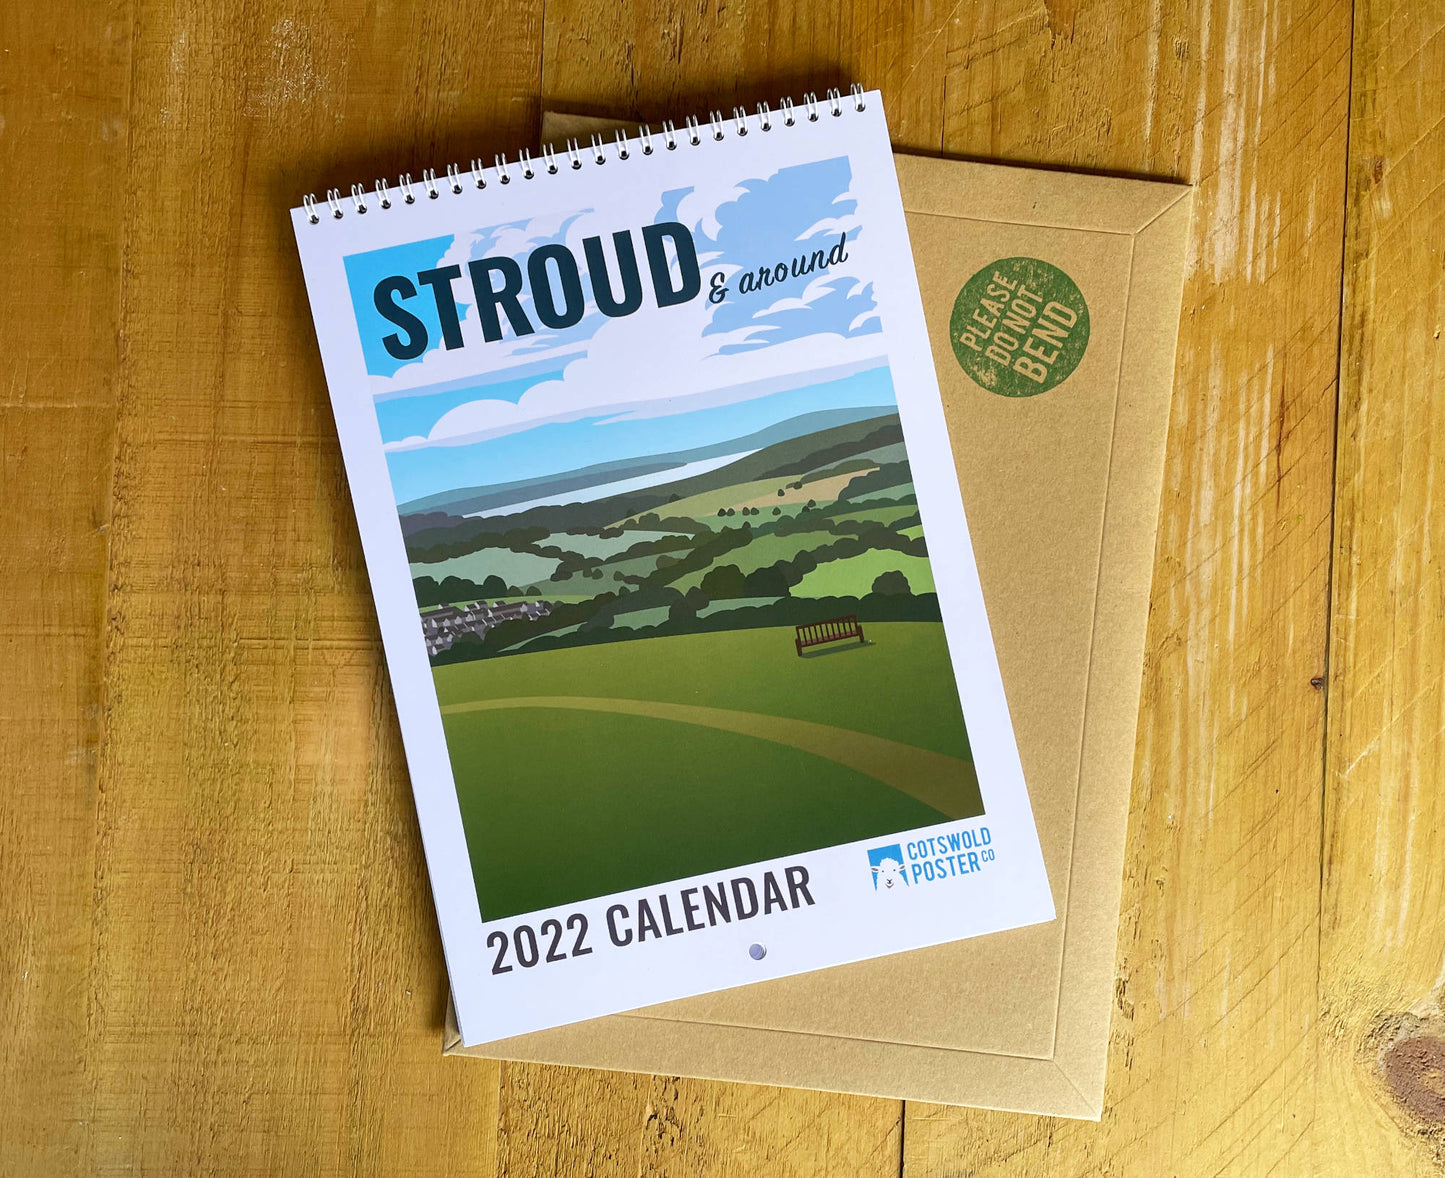 Stroud & Around 2022 Calendar